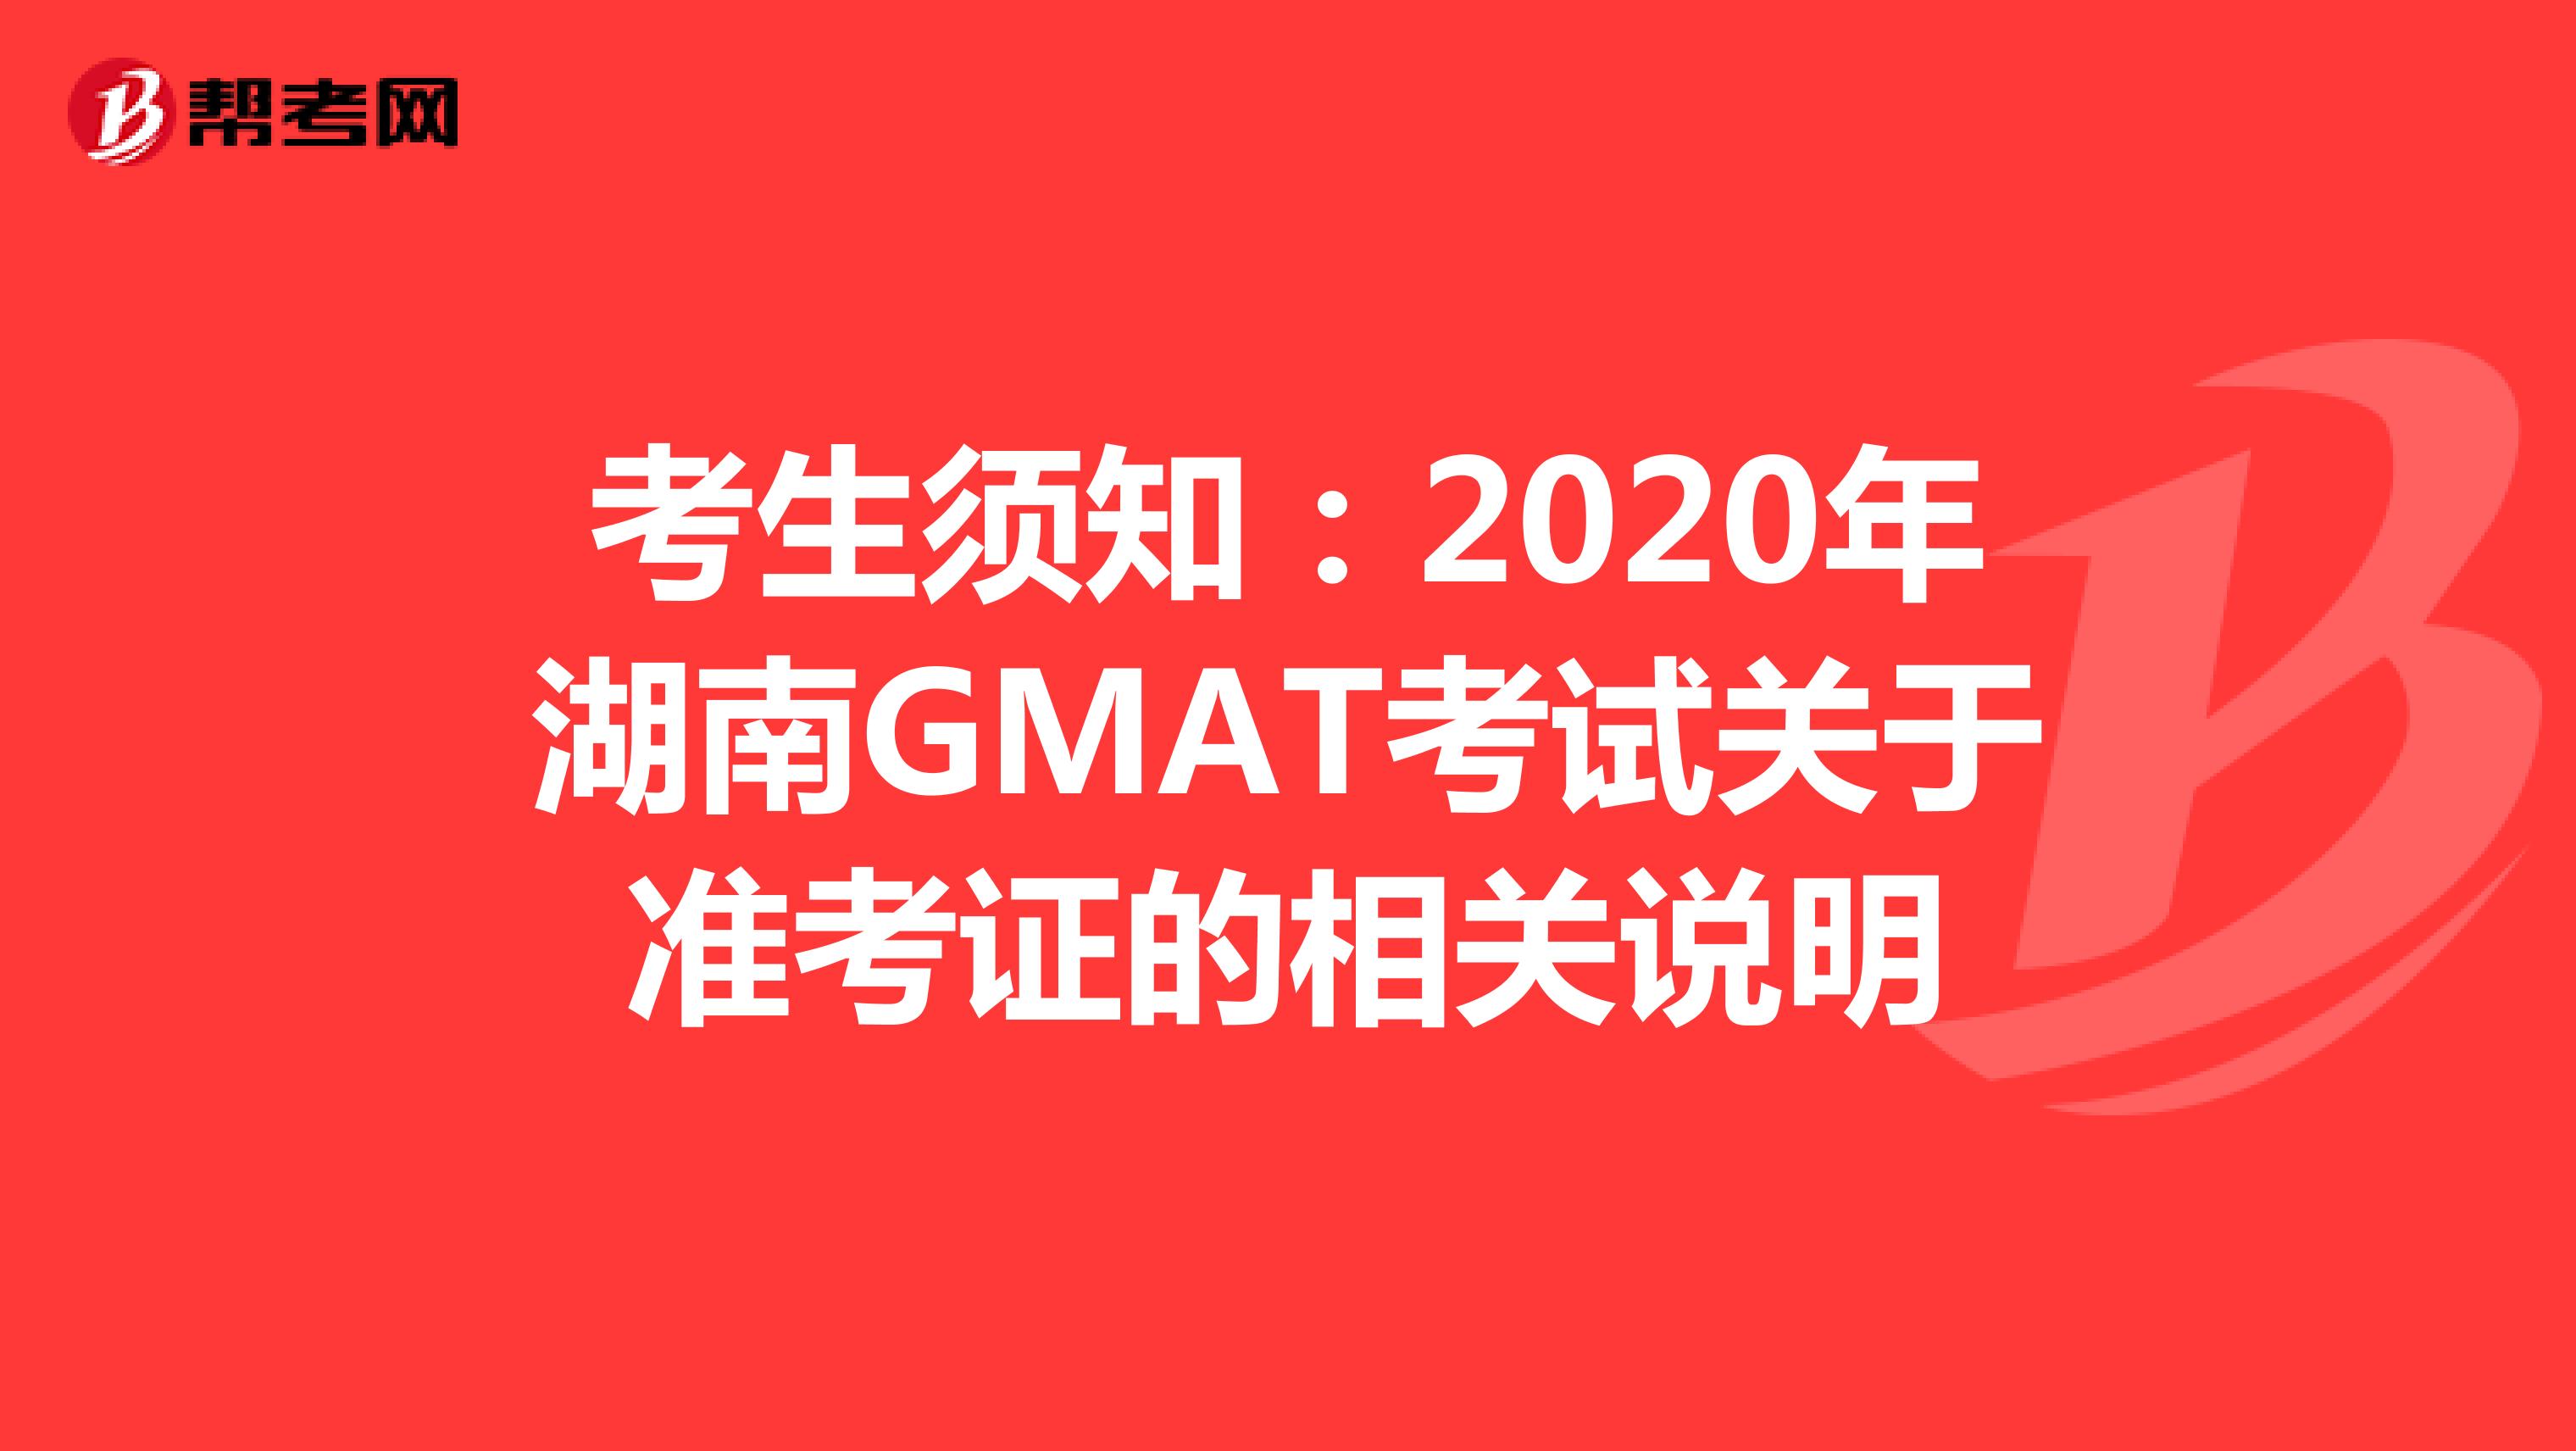 考生须知：2020年湖南GMAT考试关于准考证的相关说明